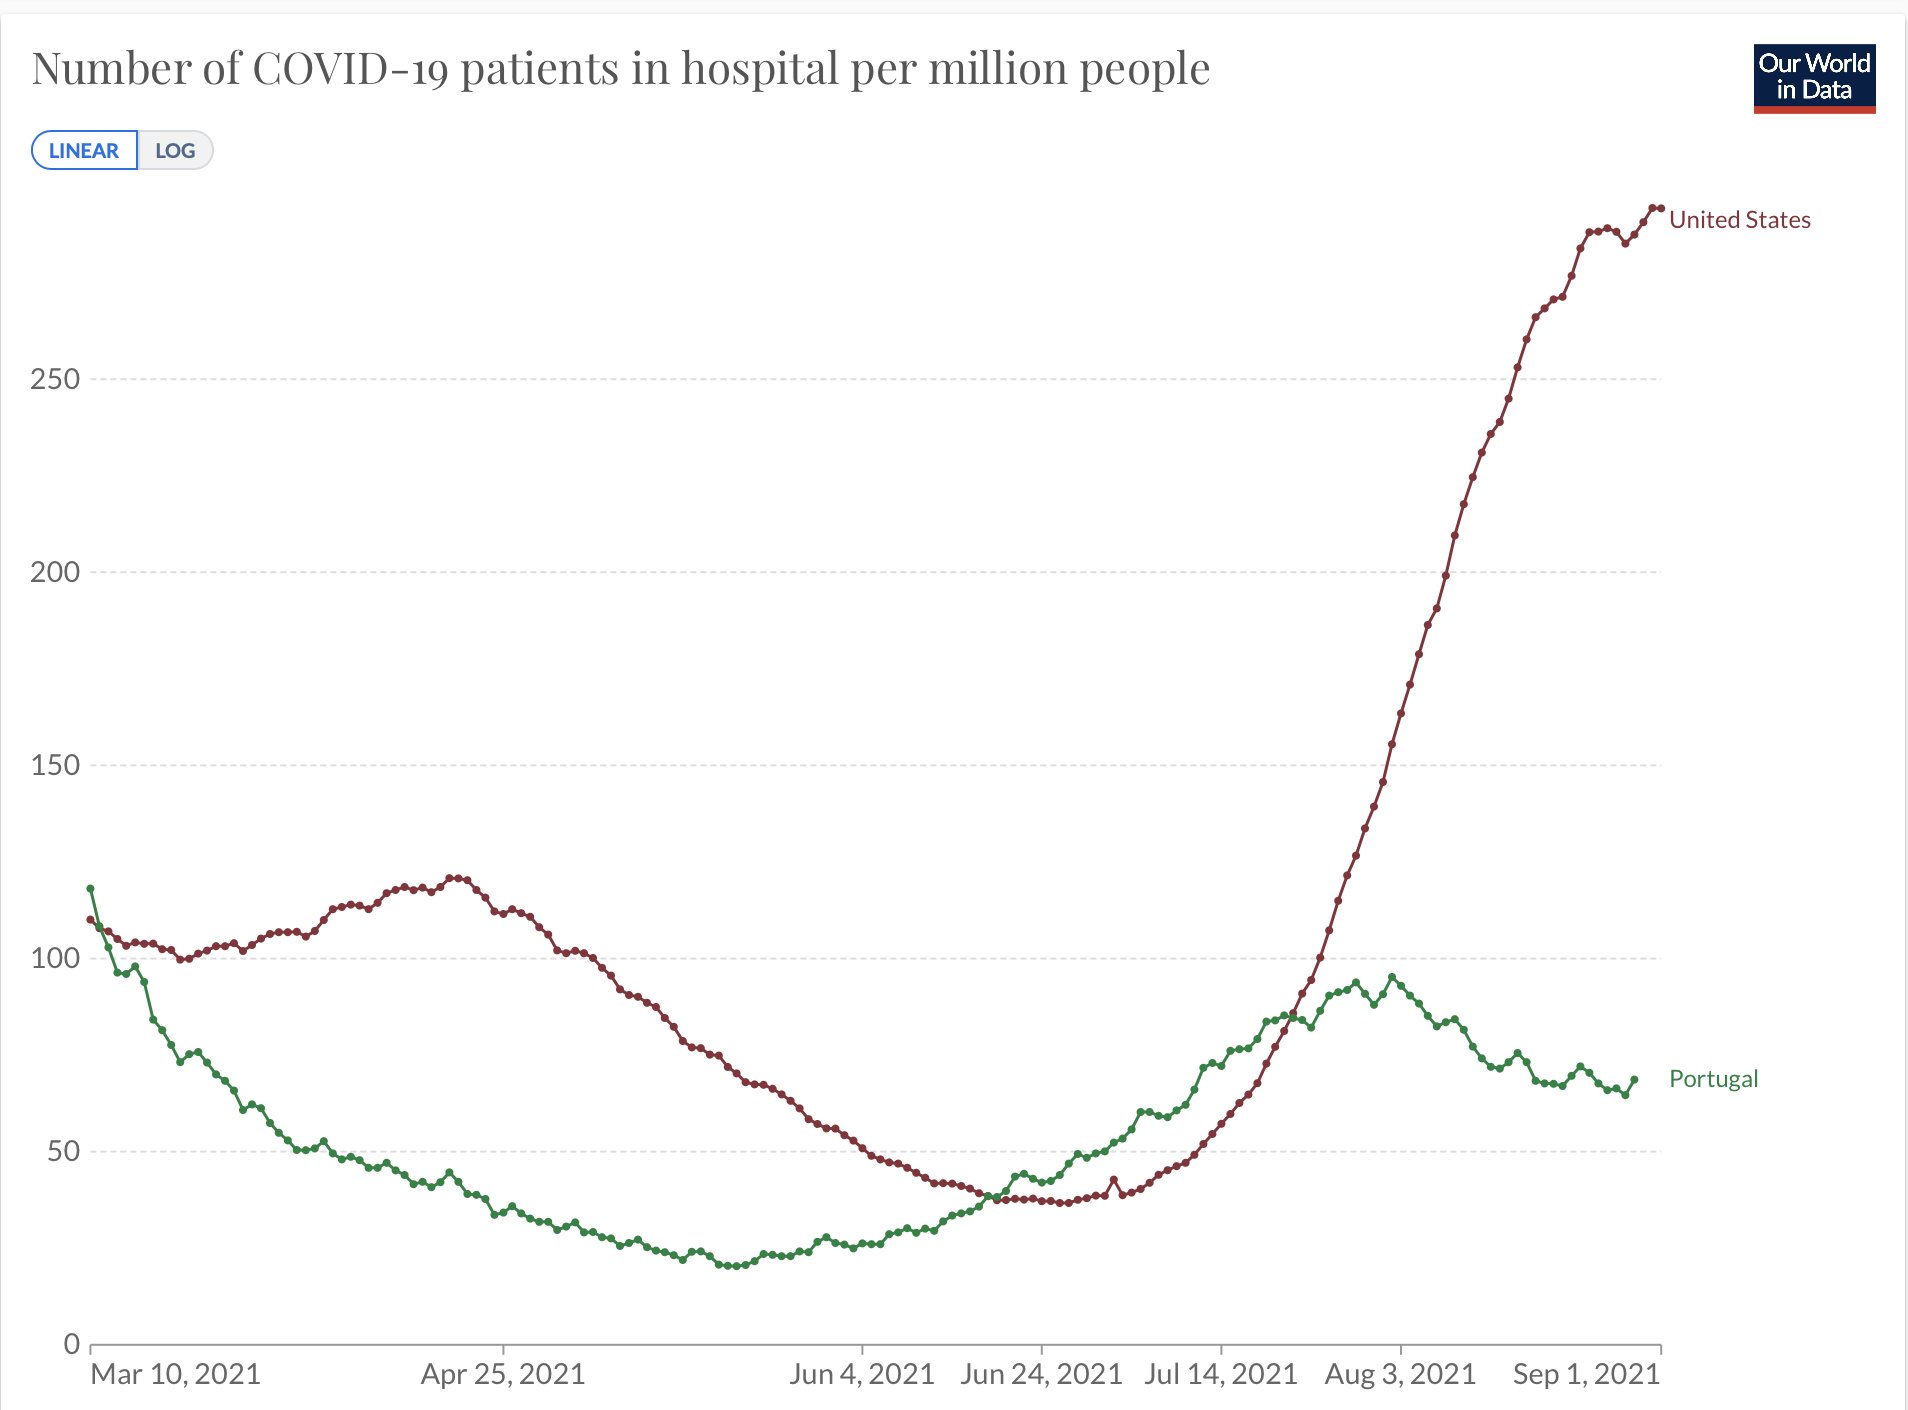 wykres hospitalizacje na COVID-19 w USA i Portugalii